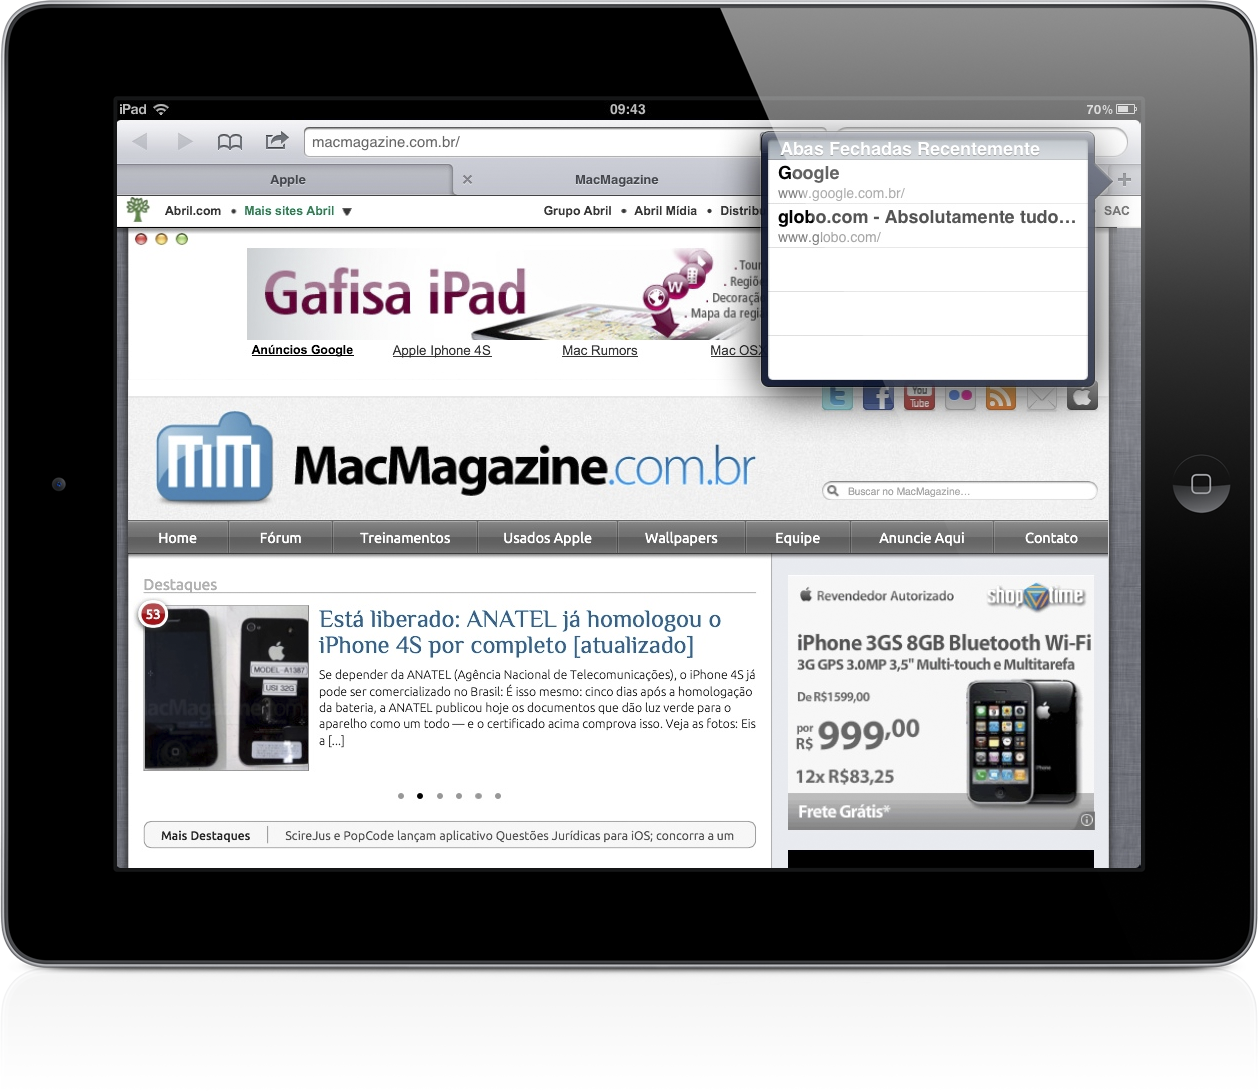 Abas Fechadas Recentemente no iOS 5 - iPad (Safari)